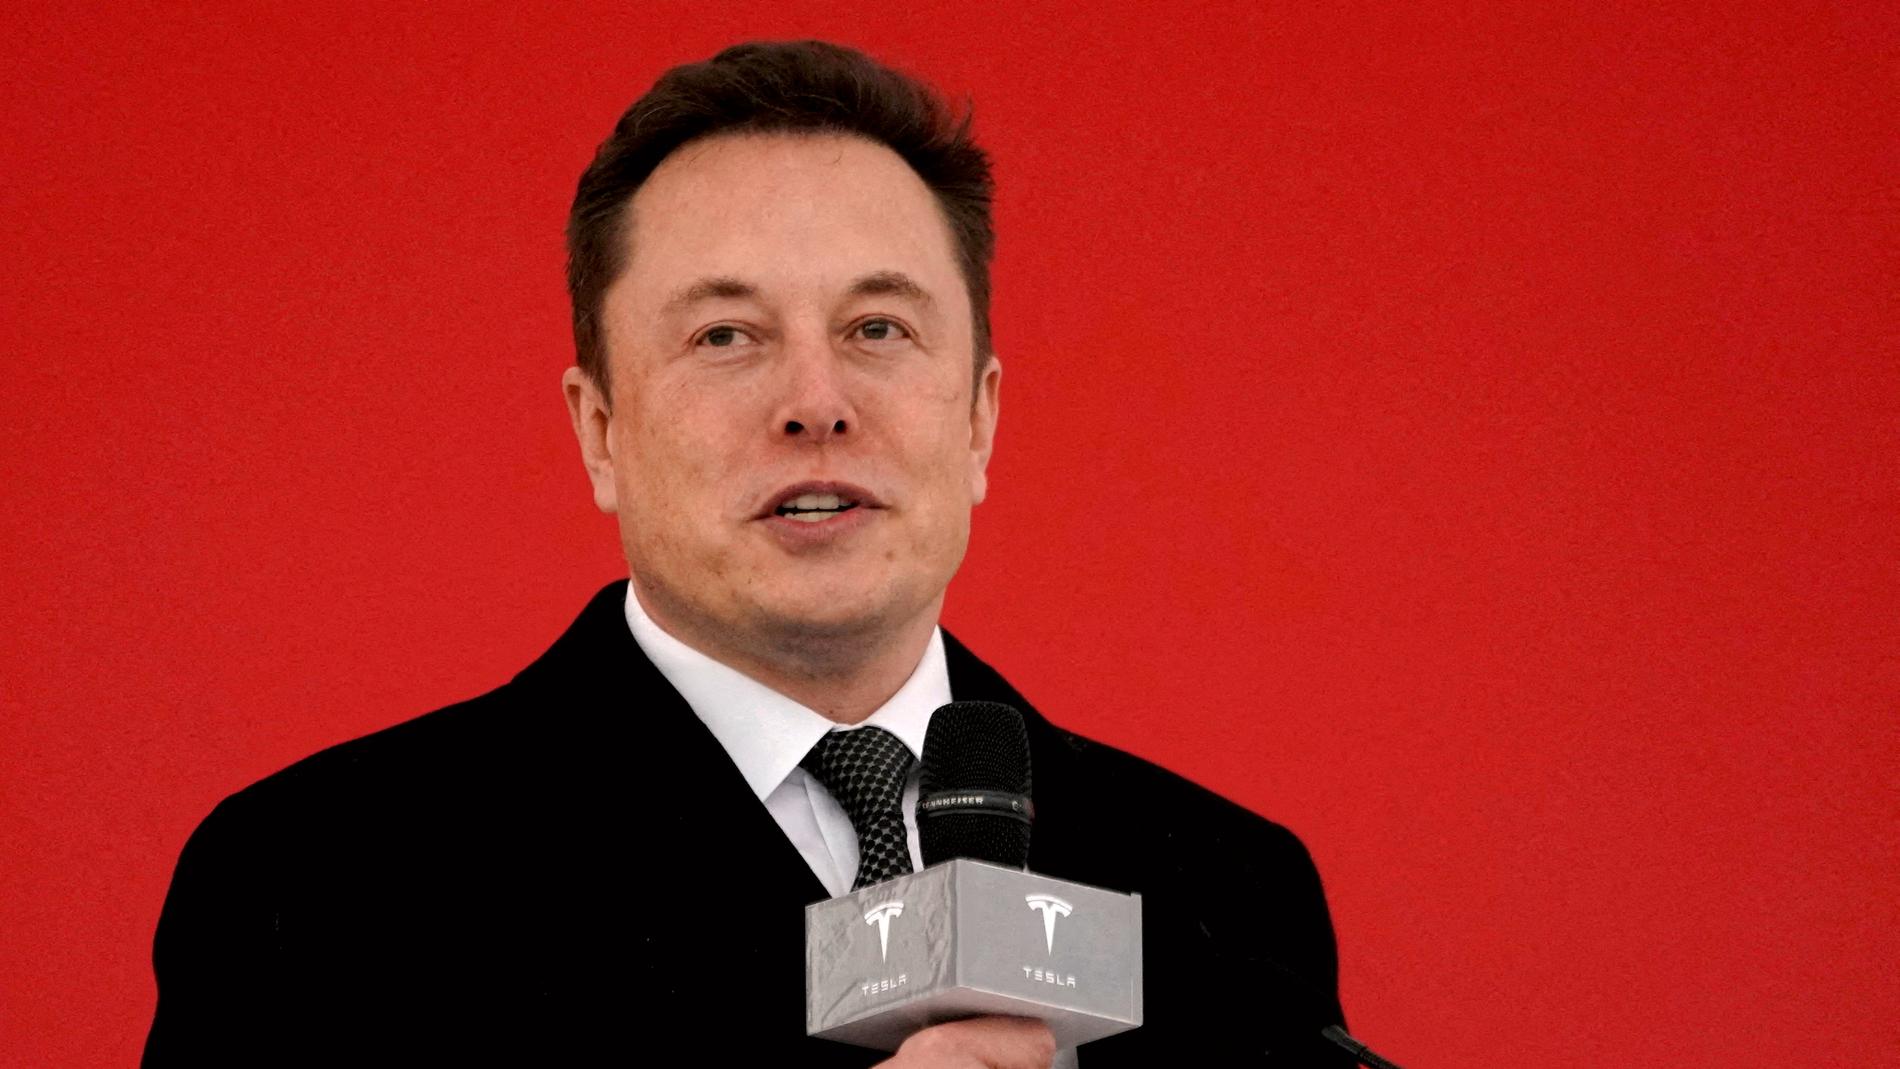 Elon Musk cancels bidding on Twitter - E24